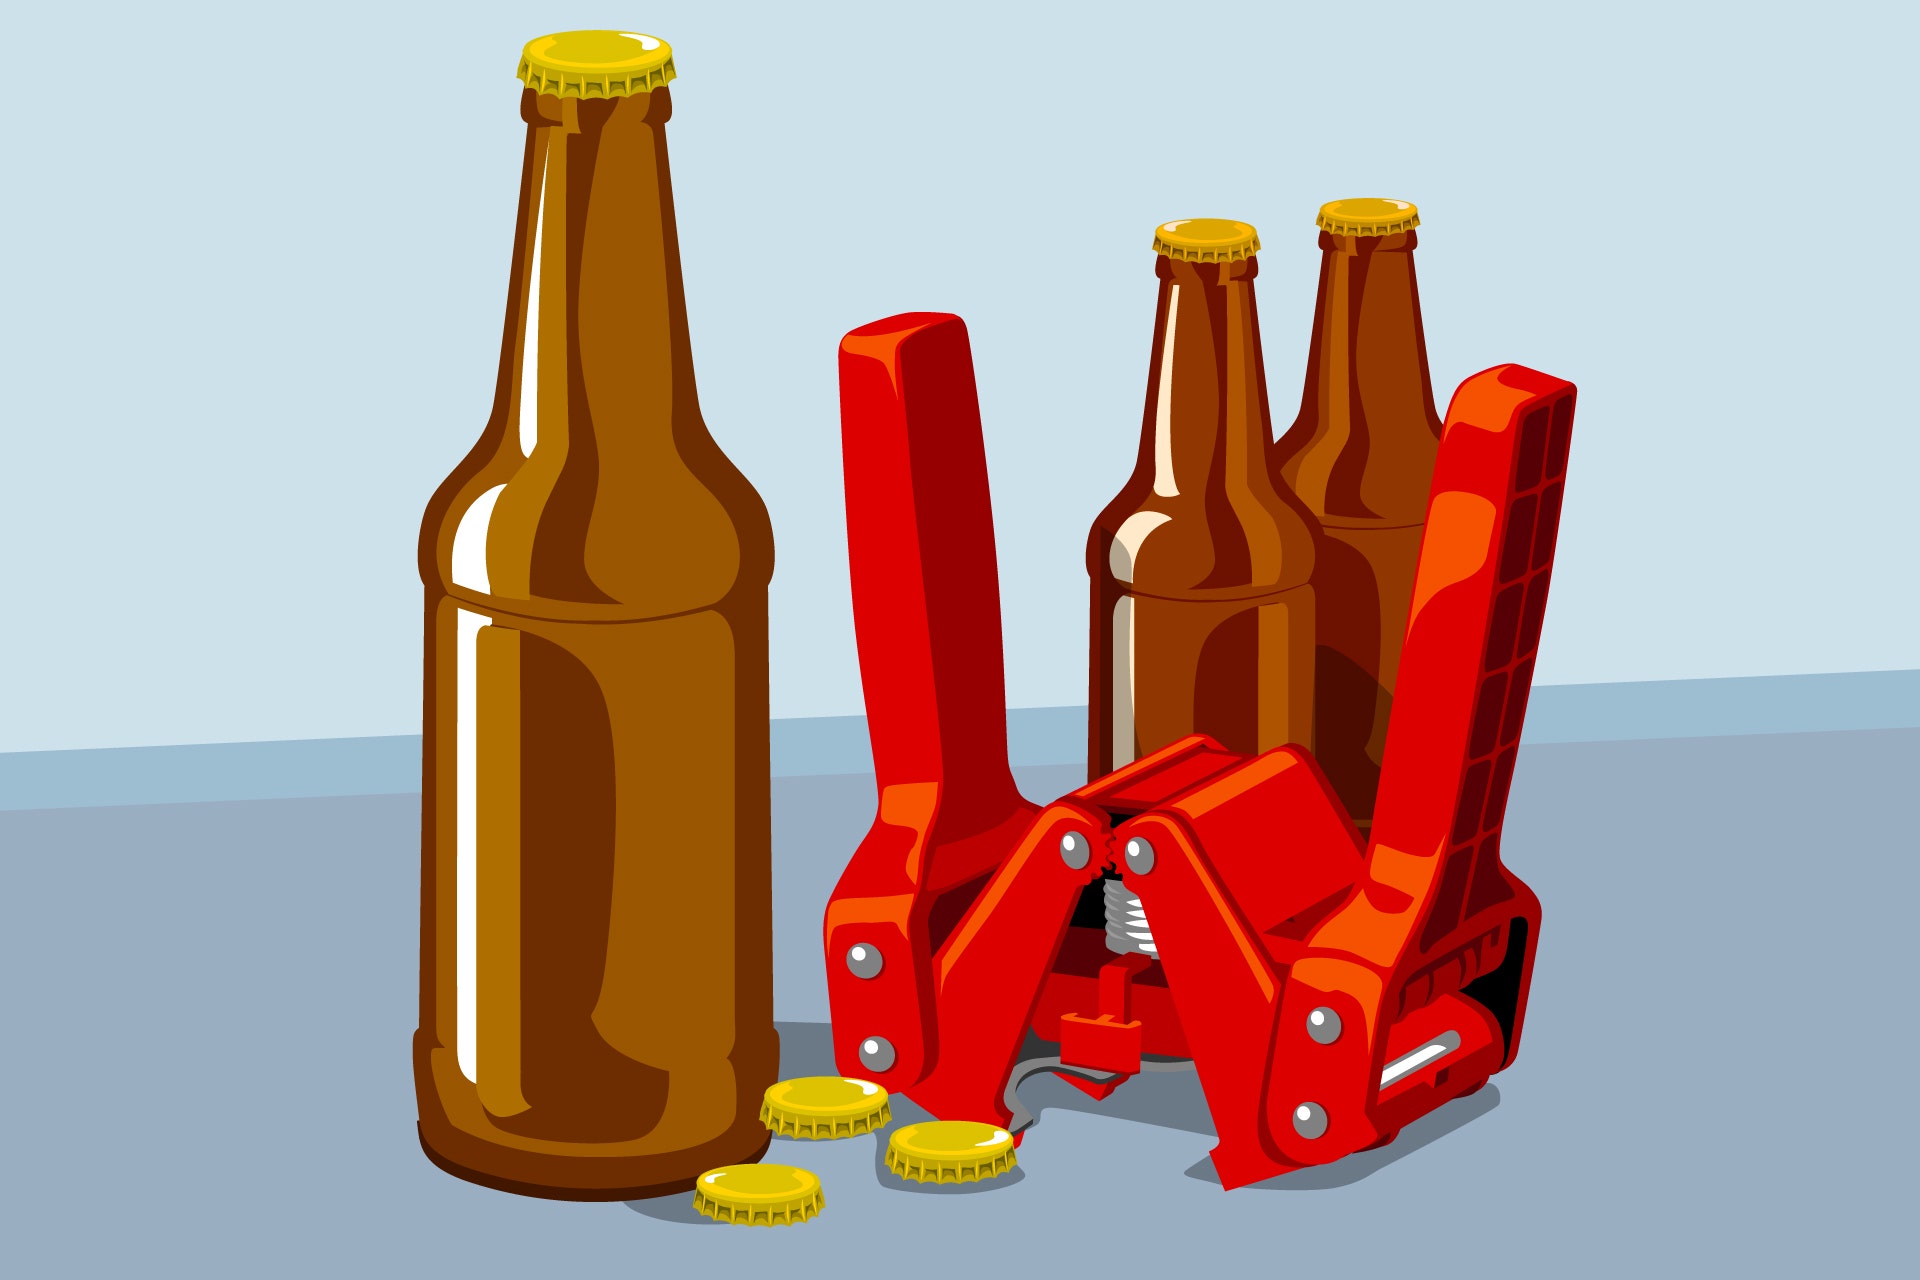 Illustration of beer bottles, caps, and mechanical bottle capper